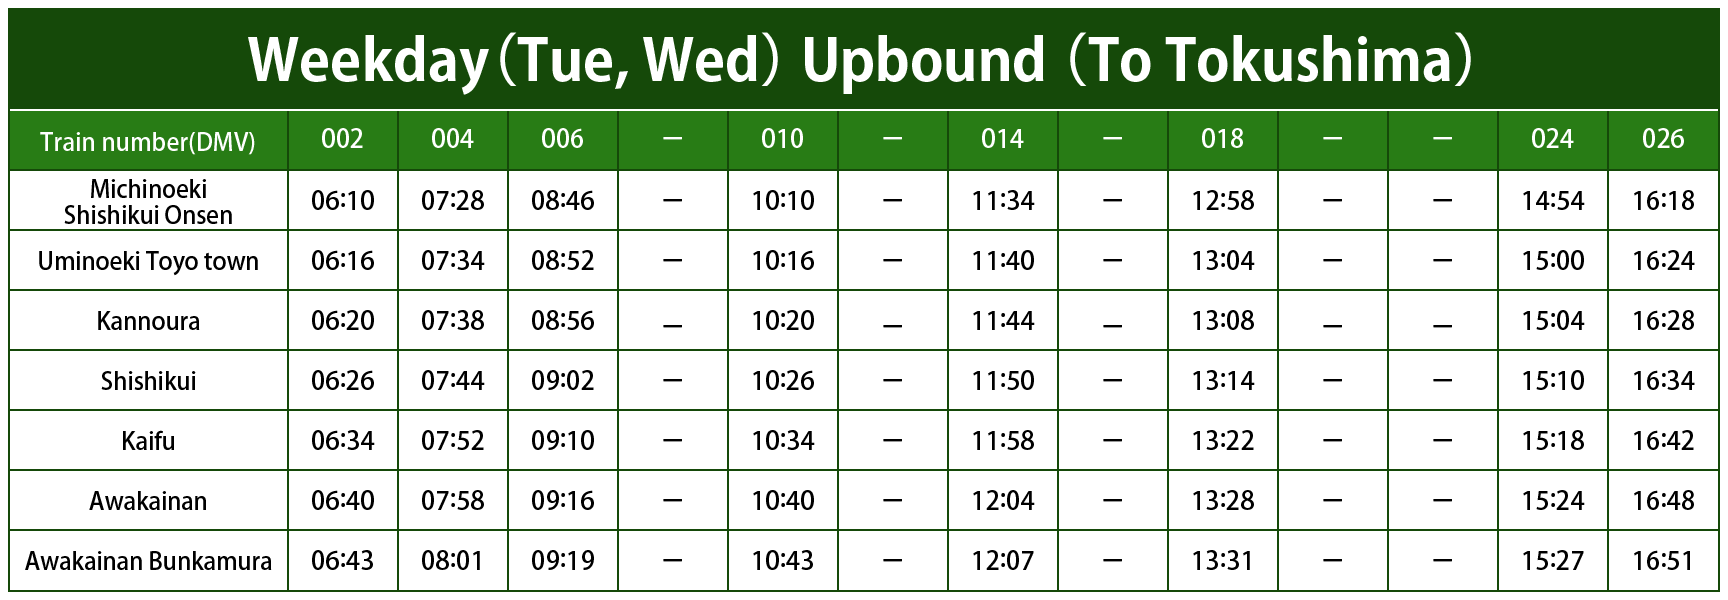 Timetable Weekday (Tue, Wed) Upbound (To Tokushima)